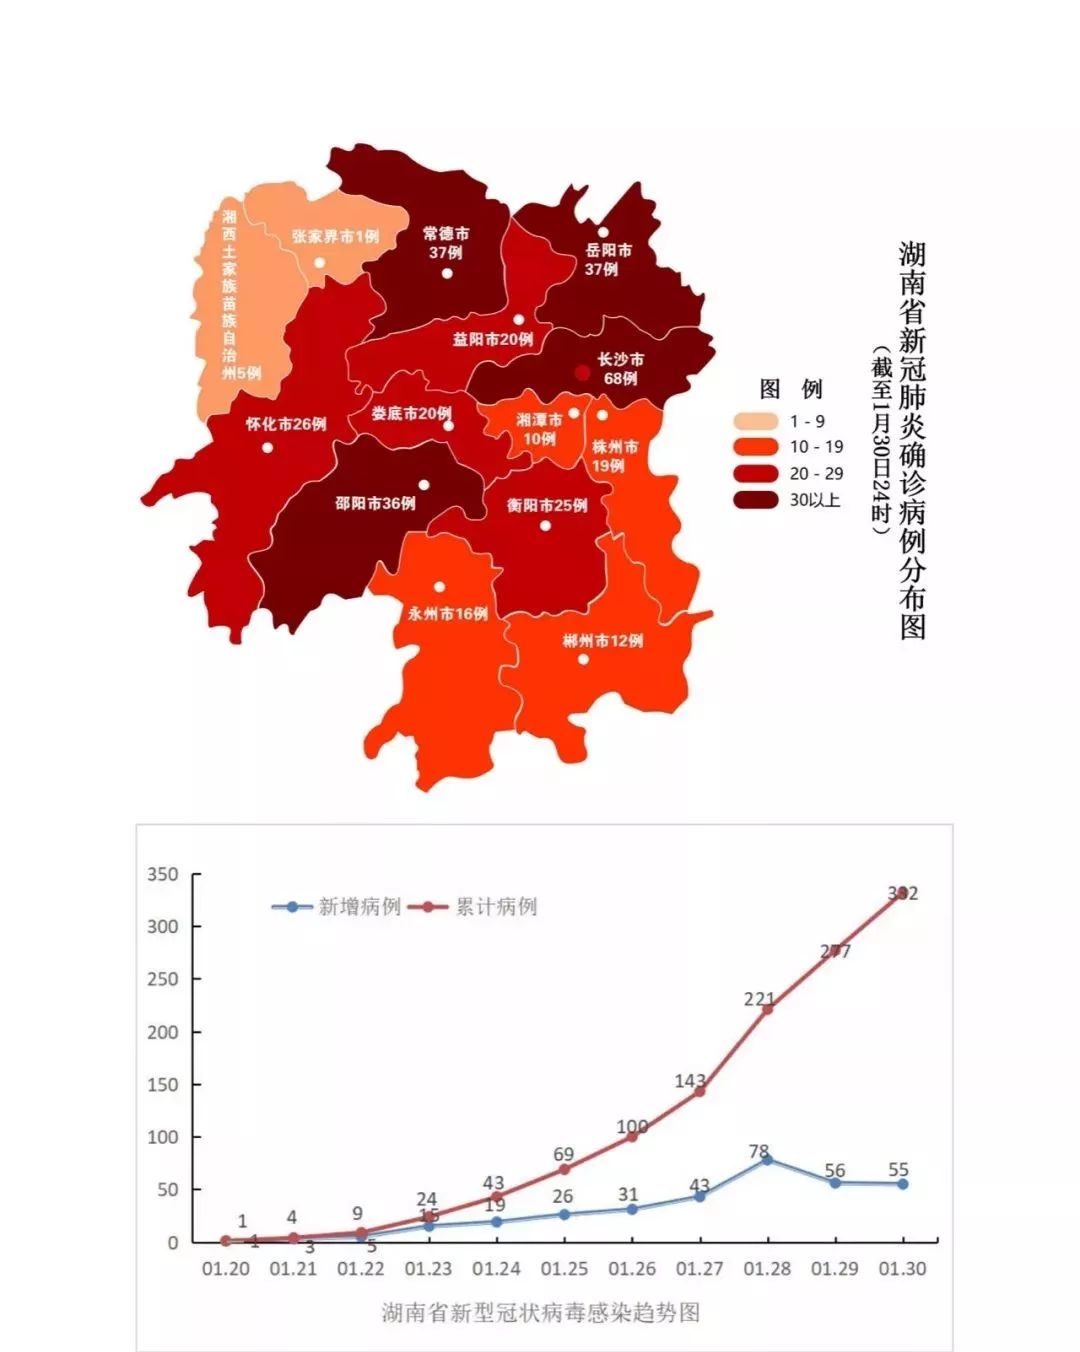 常德城区红色地图图片